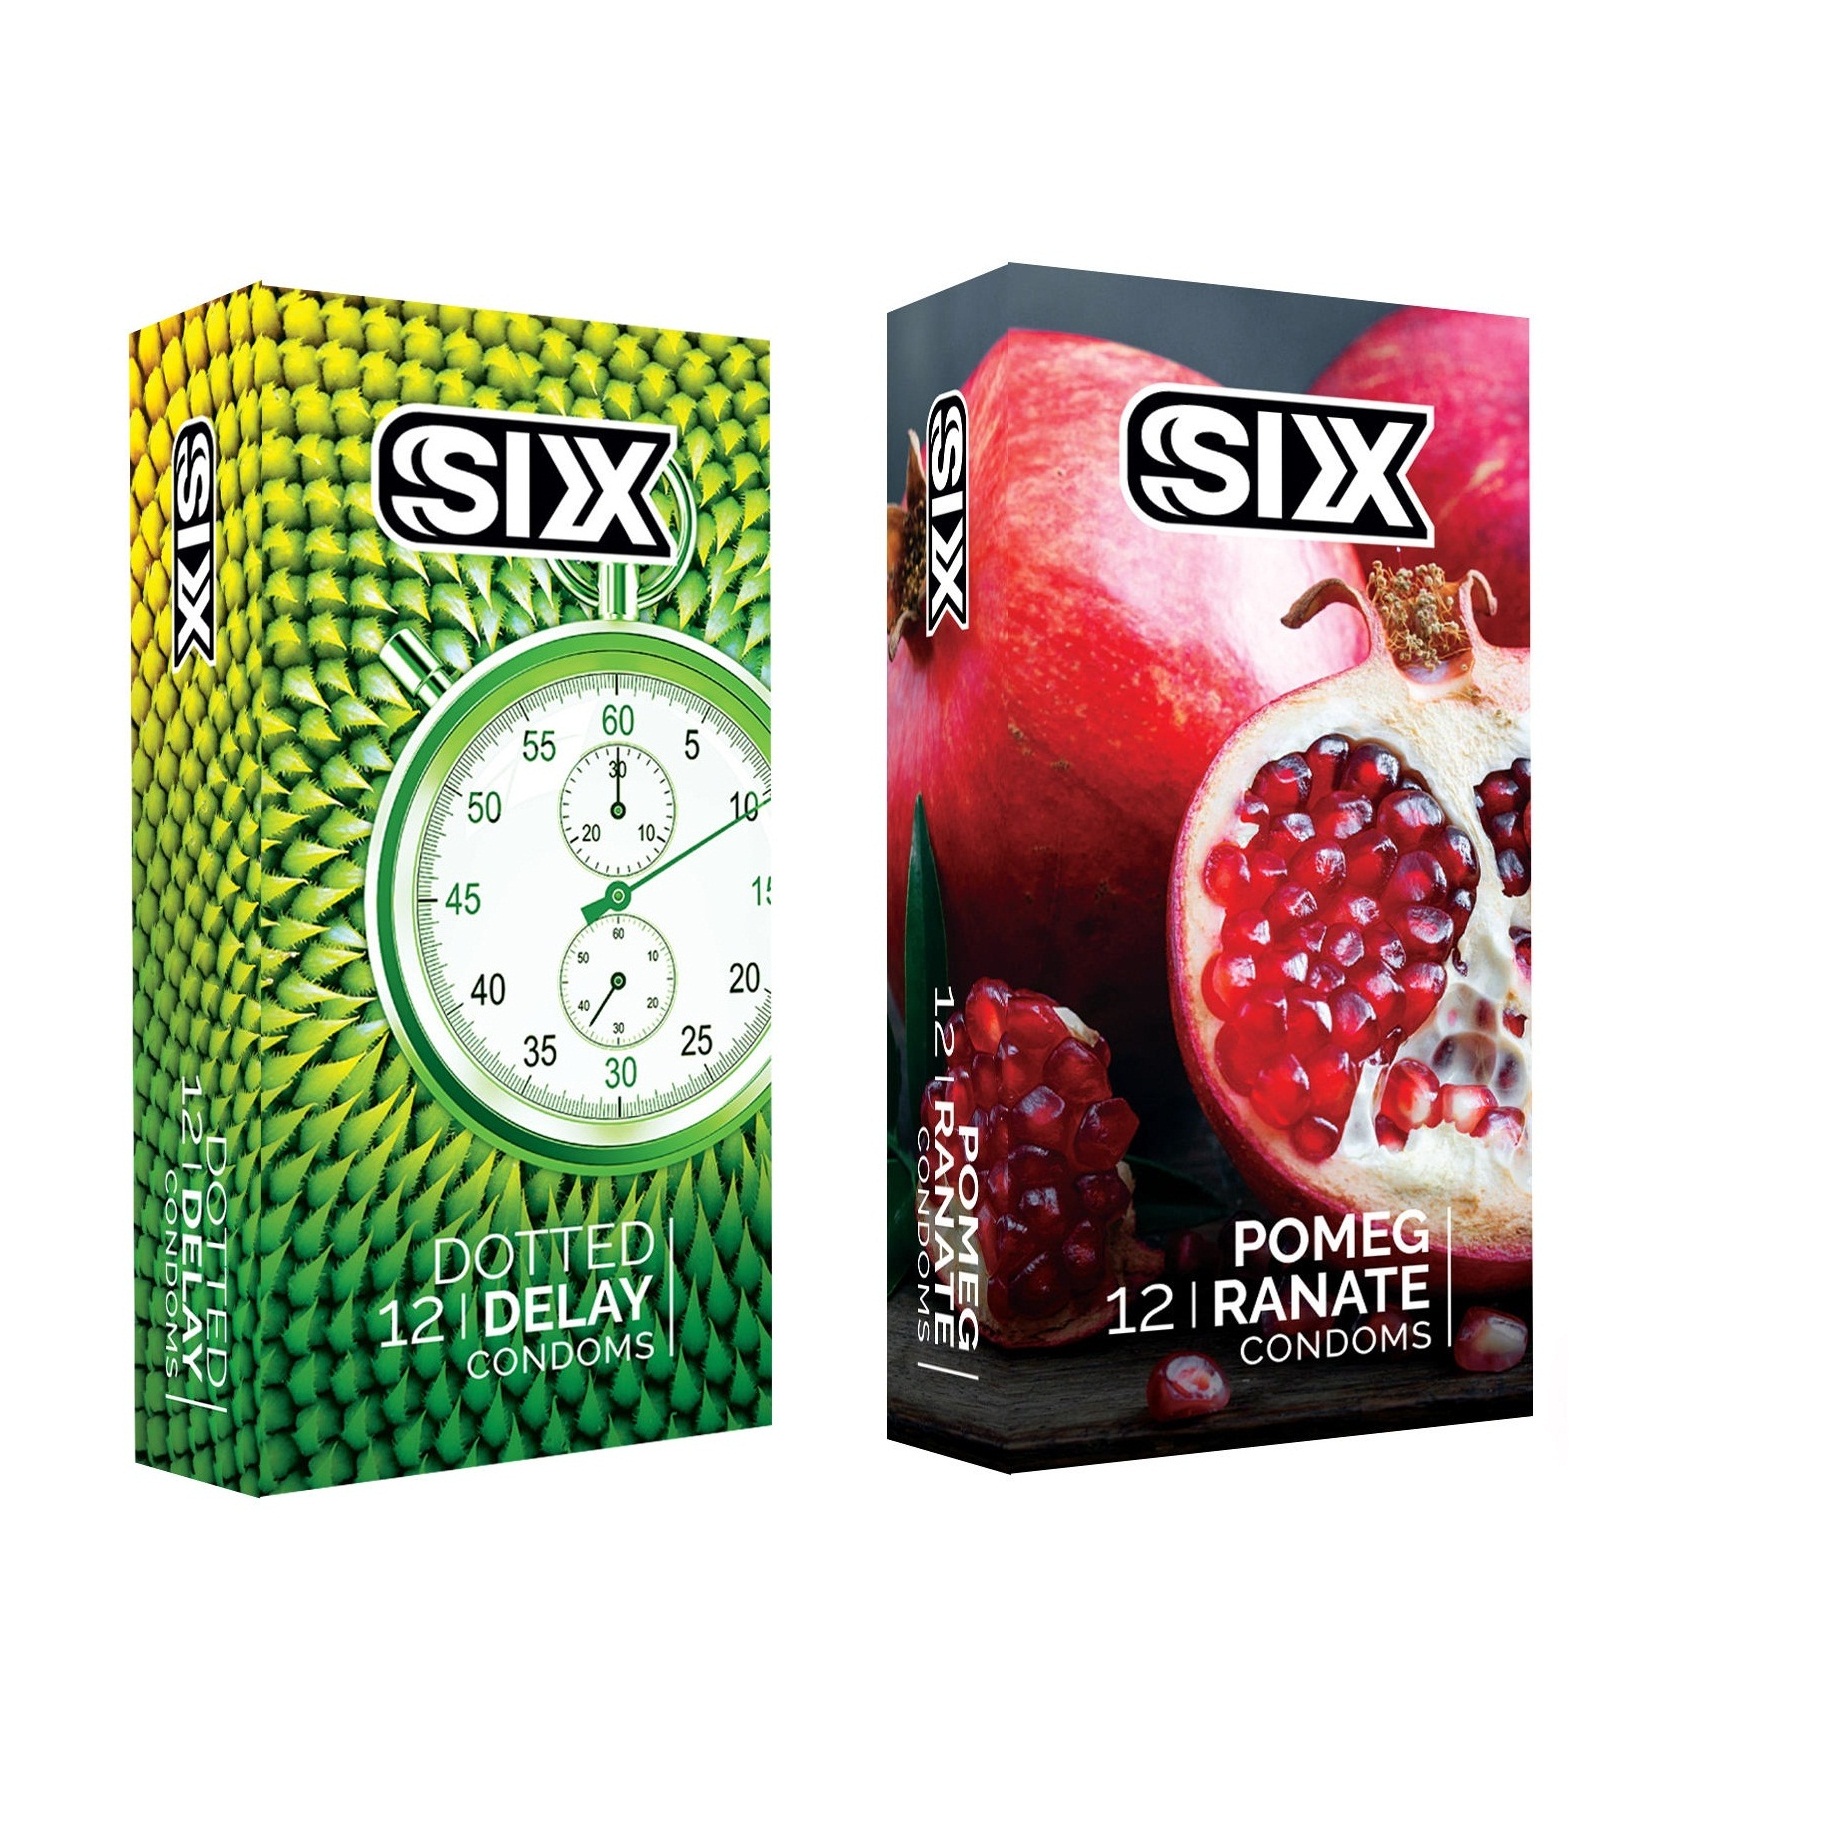 کاندوم سیکس مدل DottedDelay بسته 12 عددی به همراه کاندوم سیکس مدل Pomegranate بسته 12 عددی -  - 2